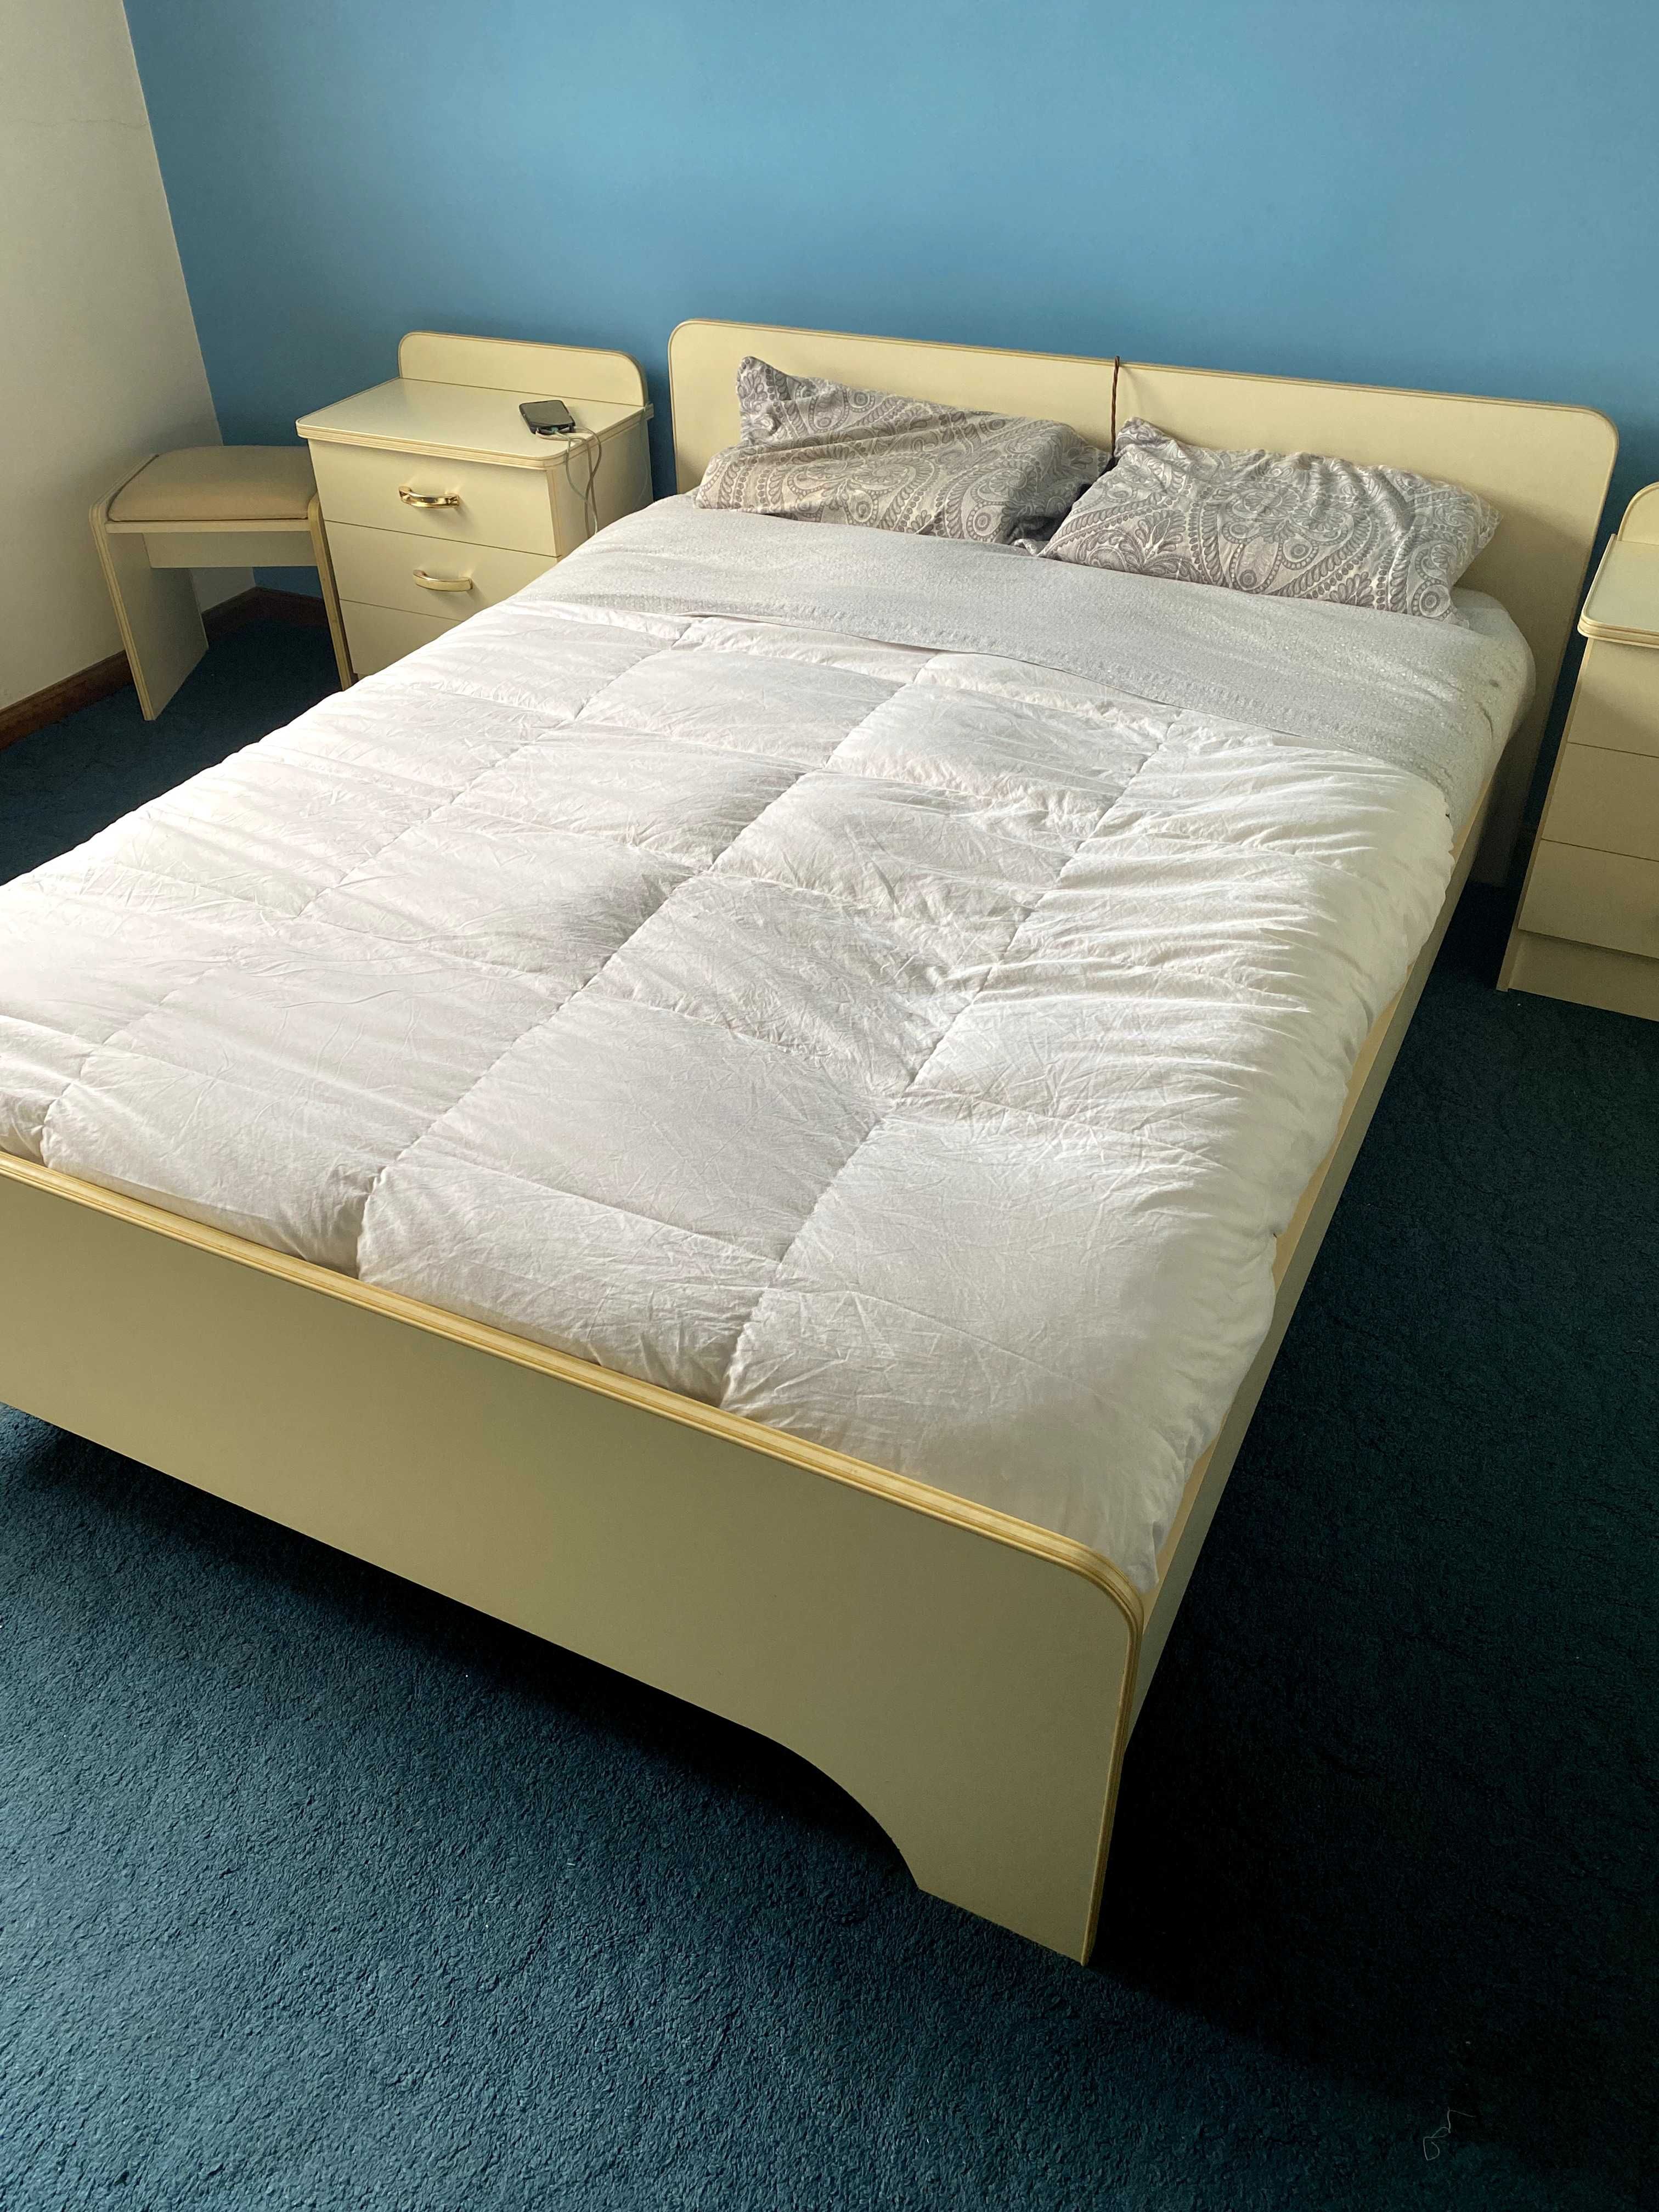 Conjunto cama + mesinhas de cabeceira + cómoda + armário + banco